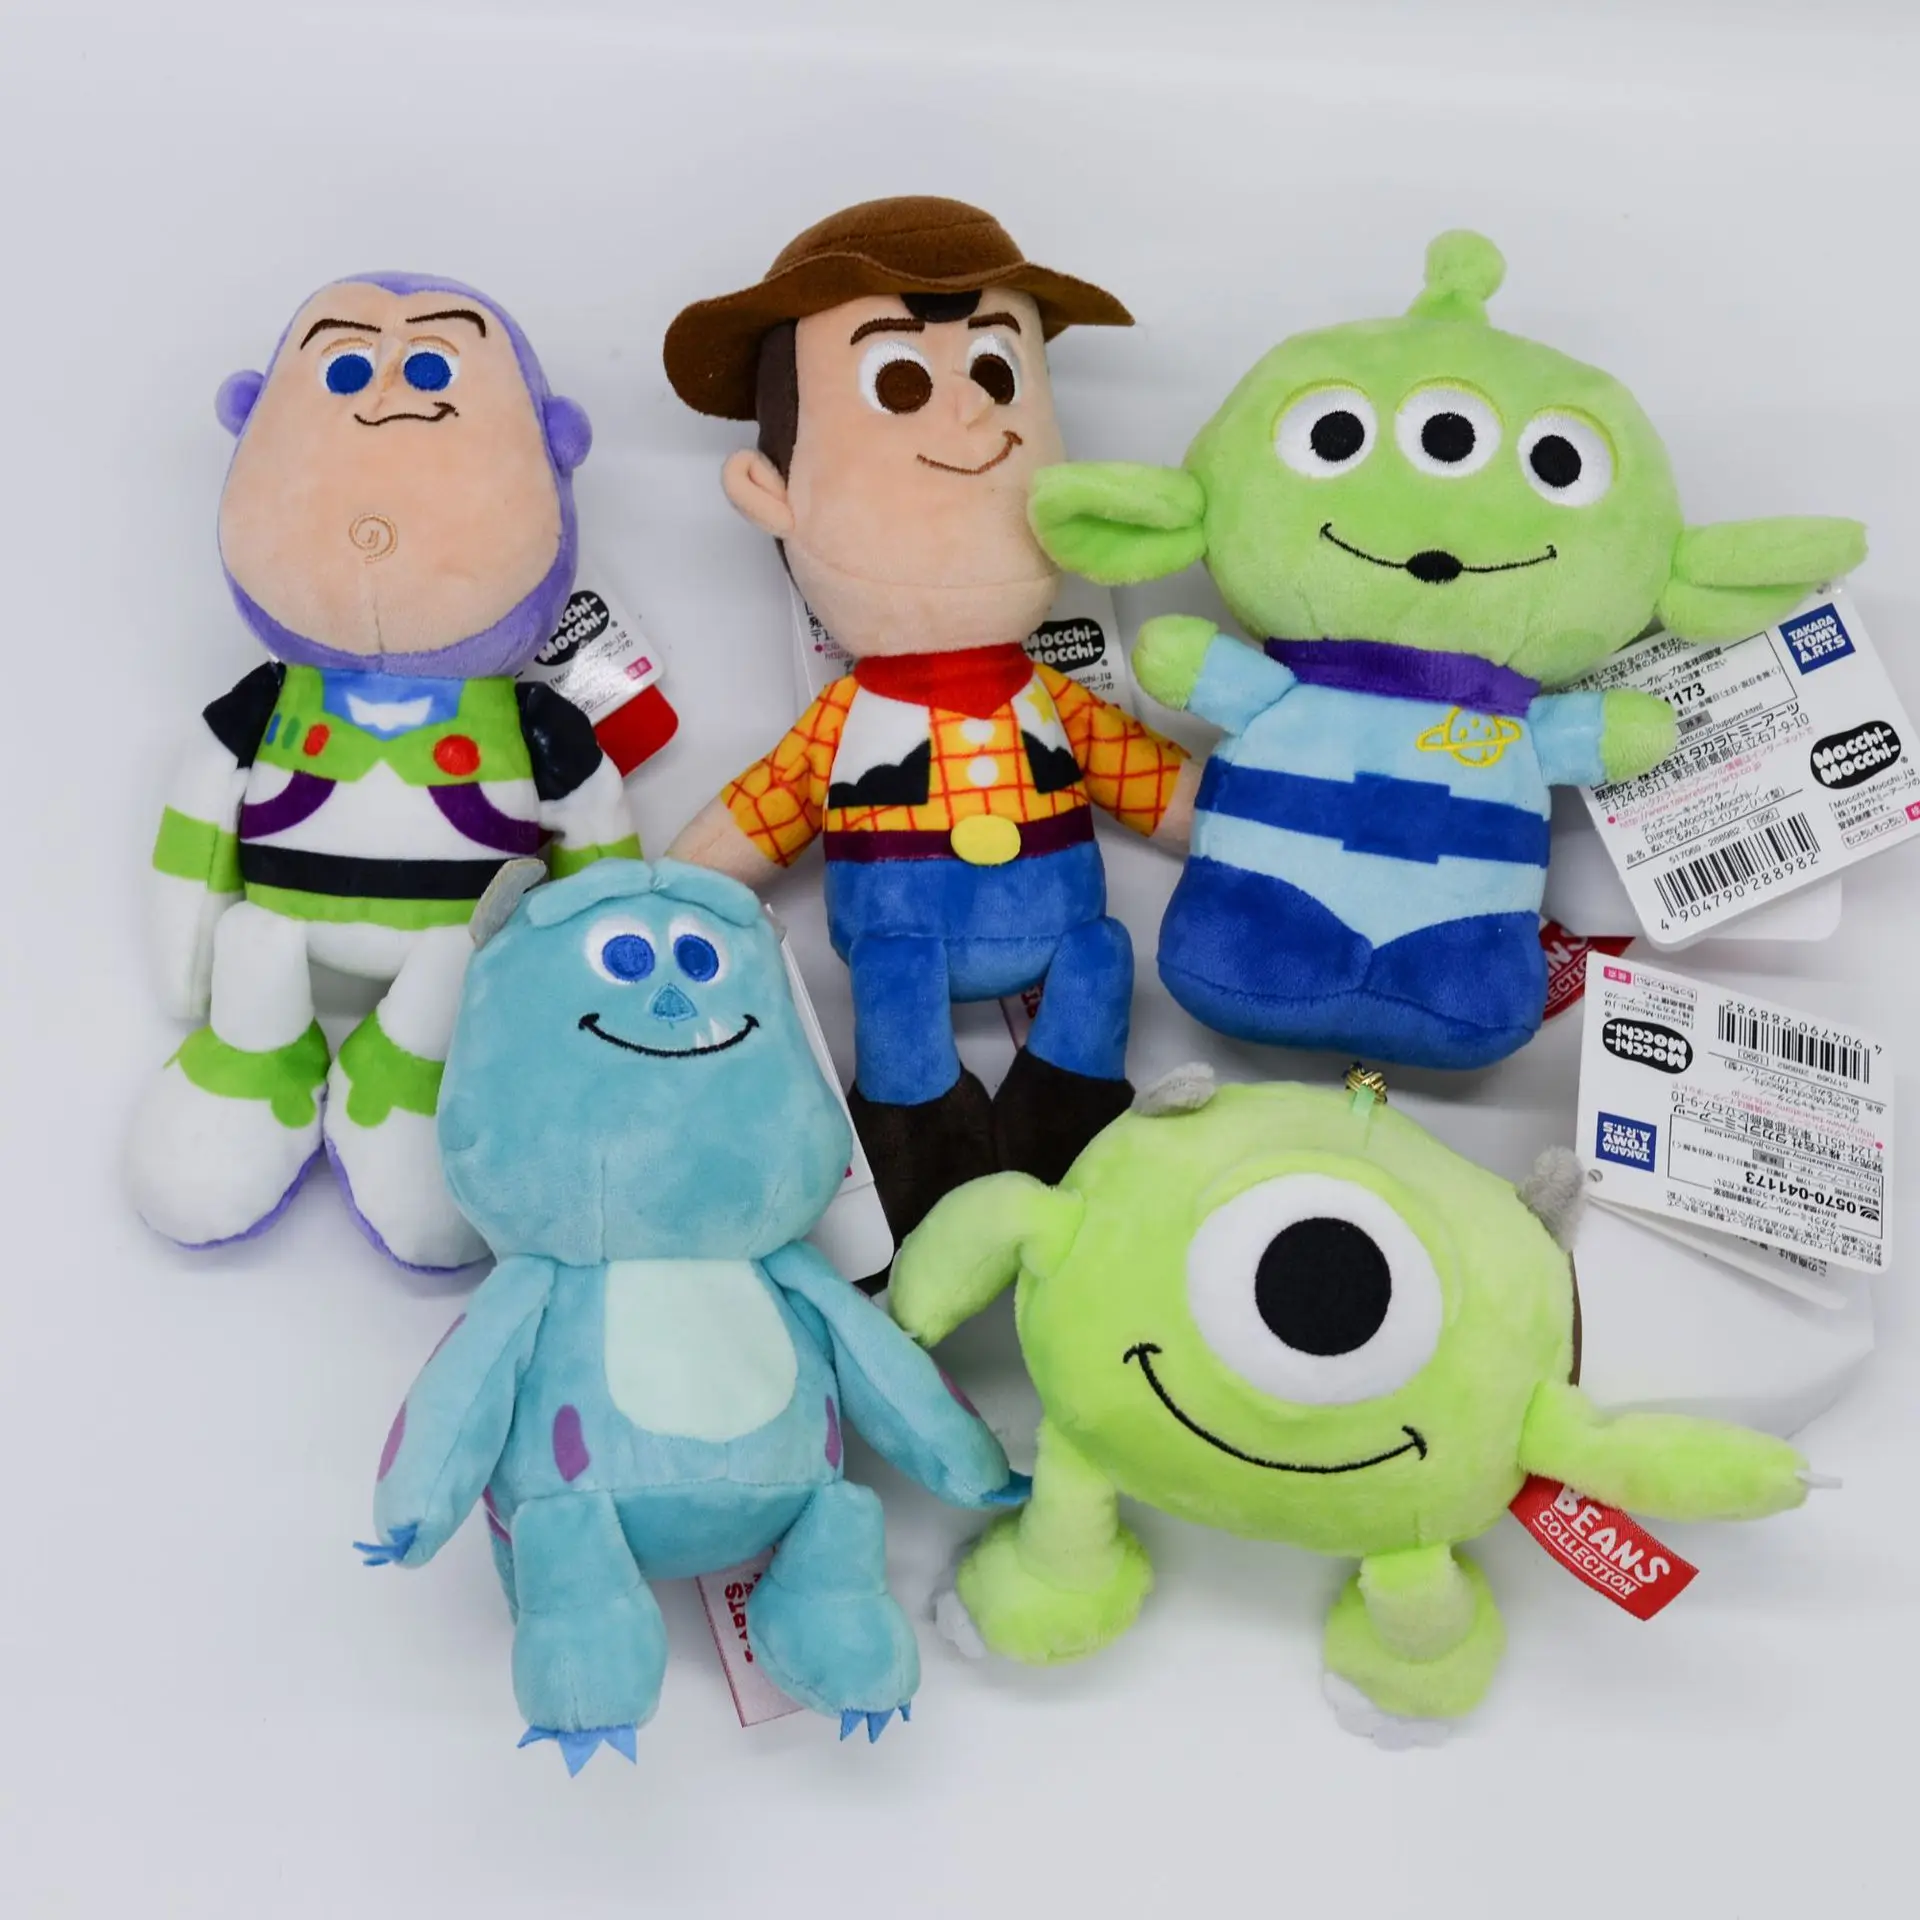 Takara Tomy Disney Beans Series Toy Story Alien Little Green Man Plush Doll Gift 